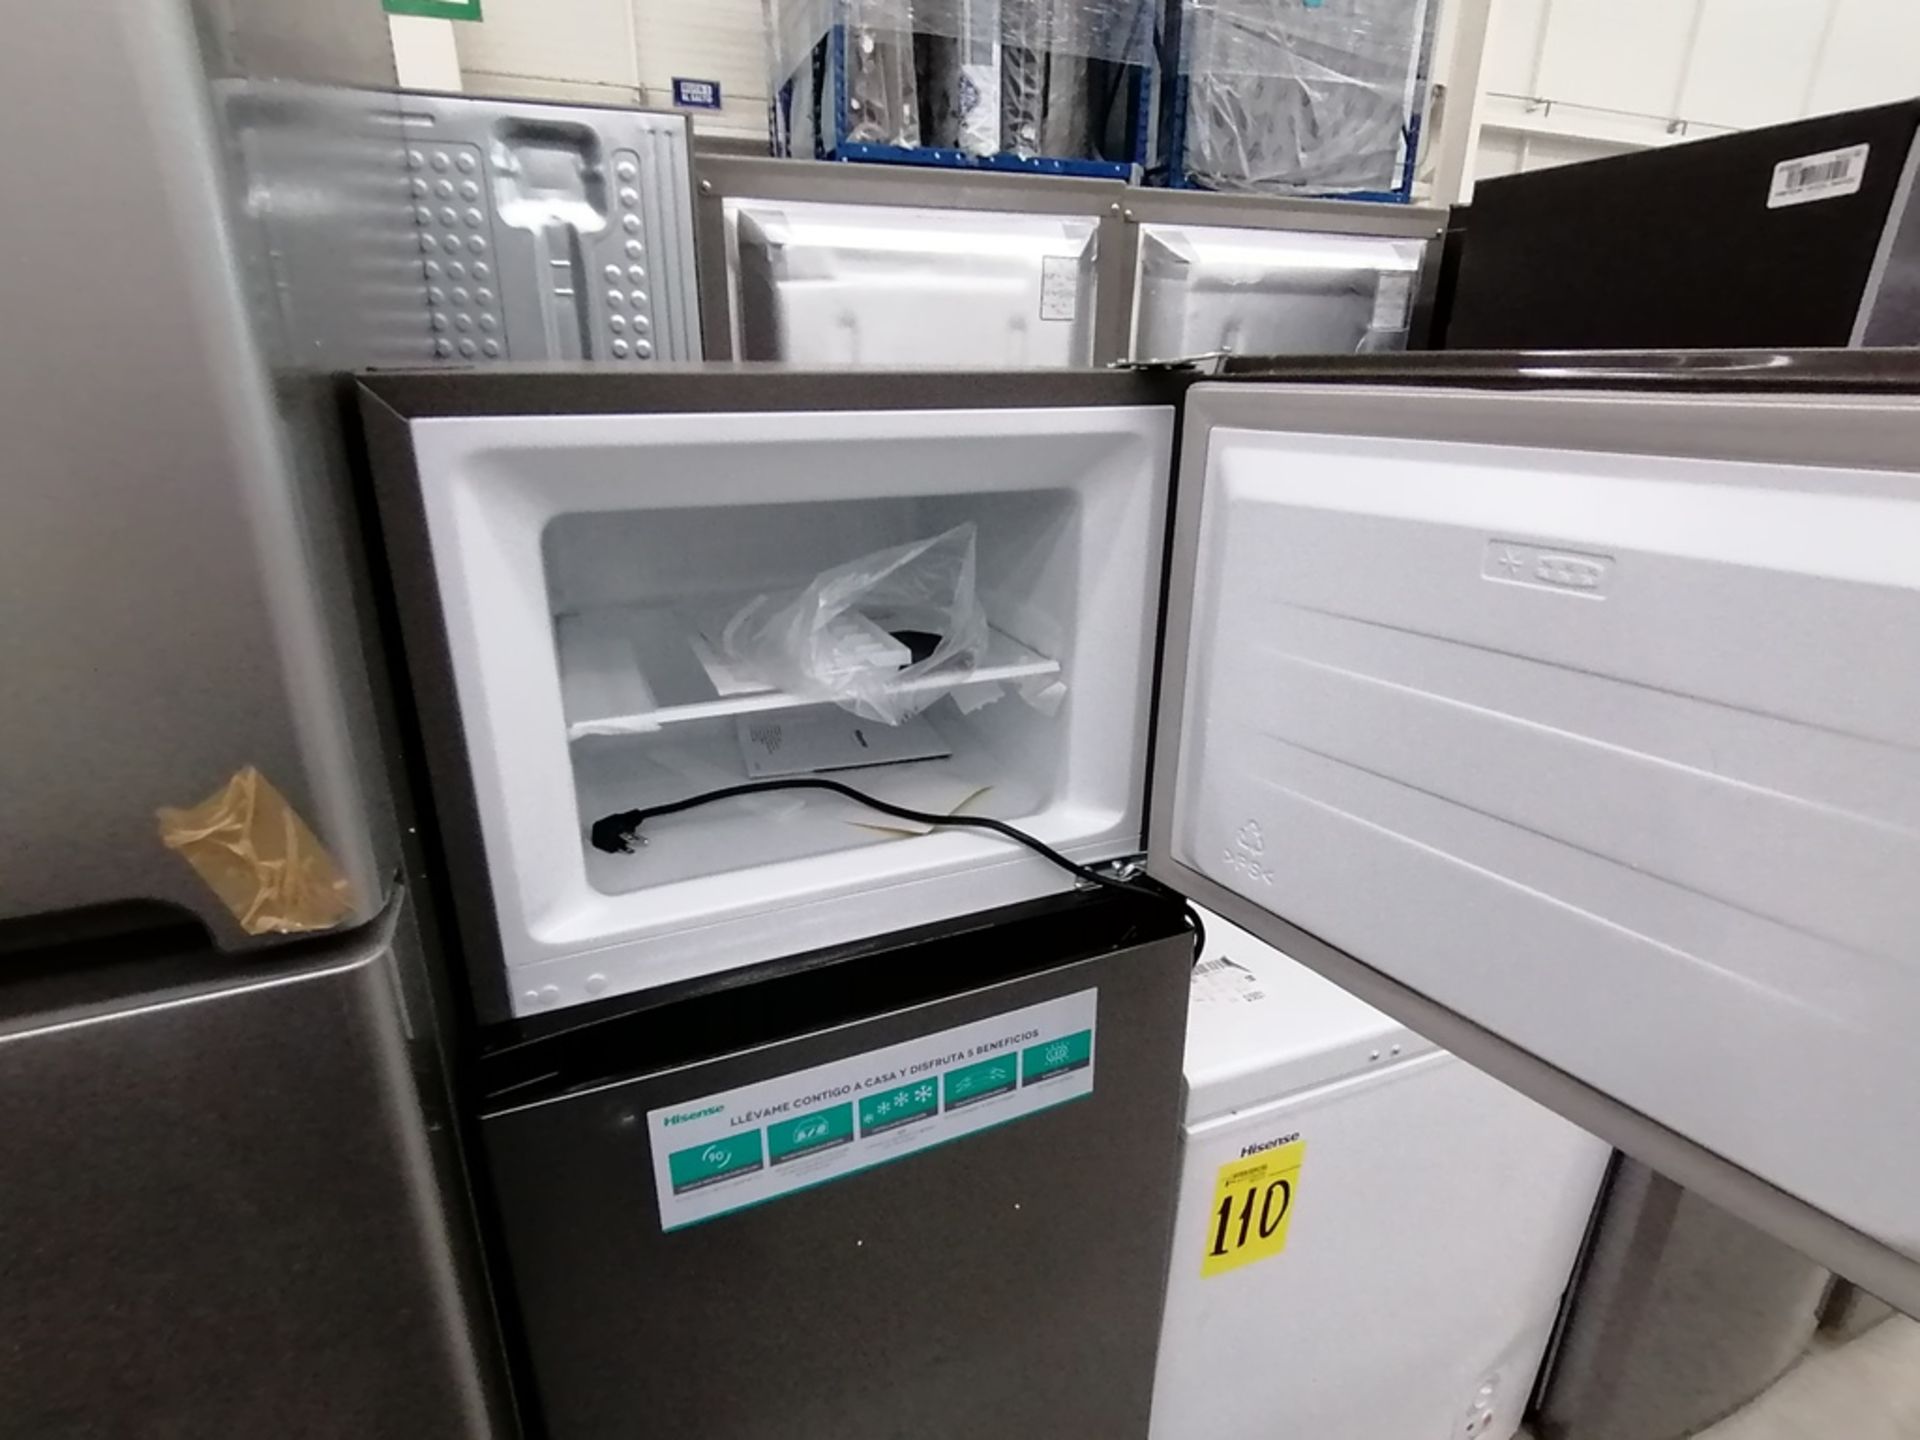 Lote de 2 refrigeradores incluye: 1 Refrigerador, Marca Winia, Modelo DFR40510GNDG, Serie MR21YN107 - Image 6 of 15